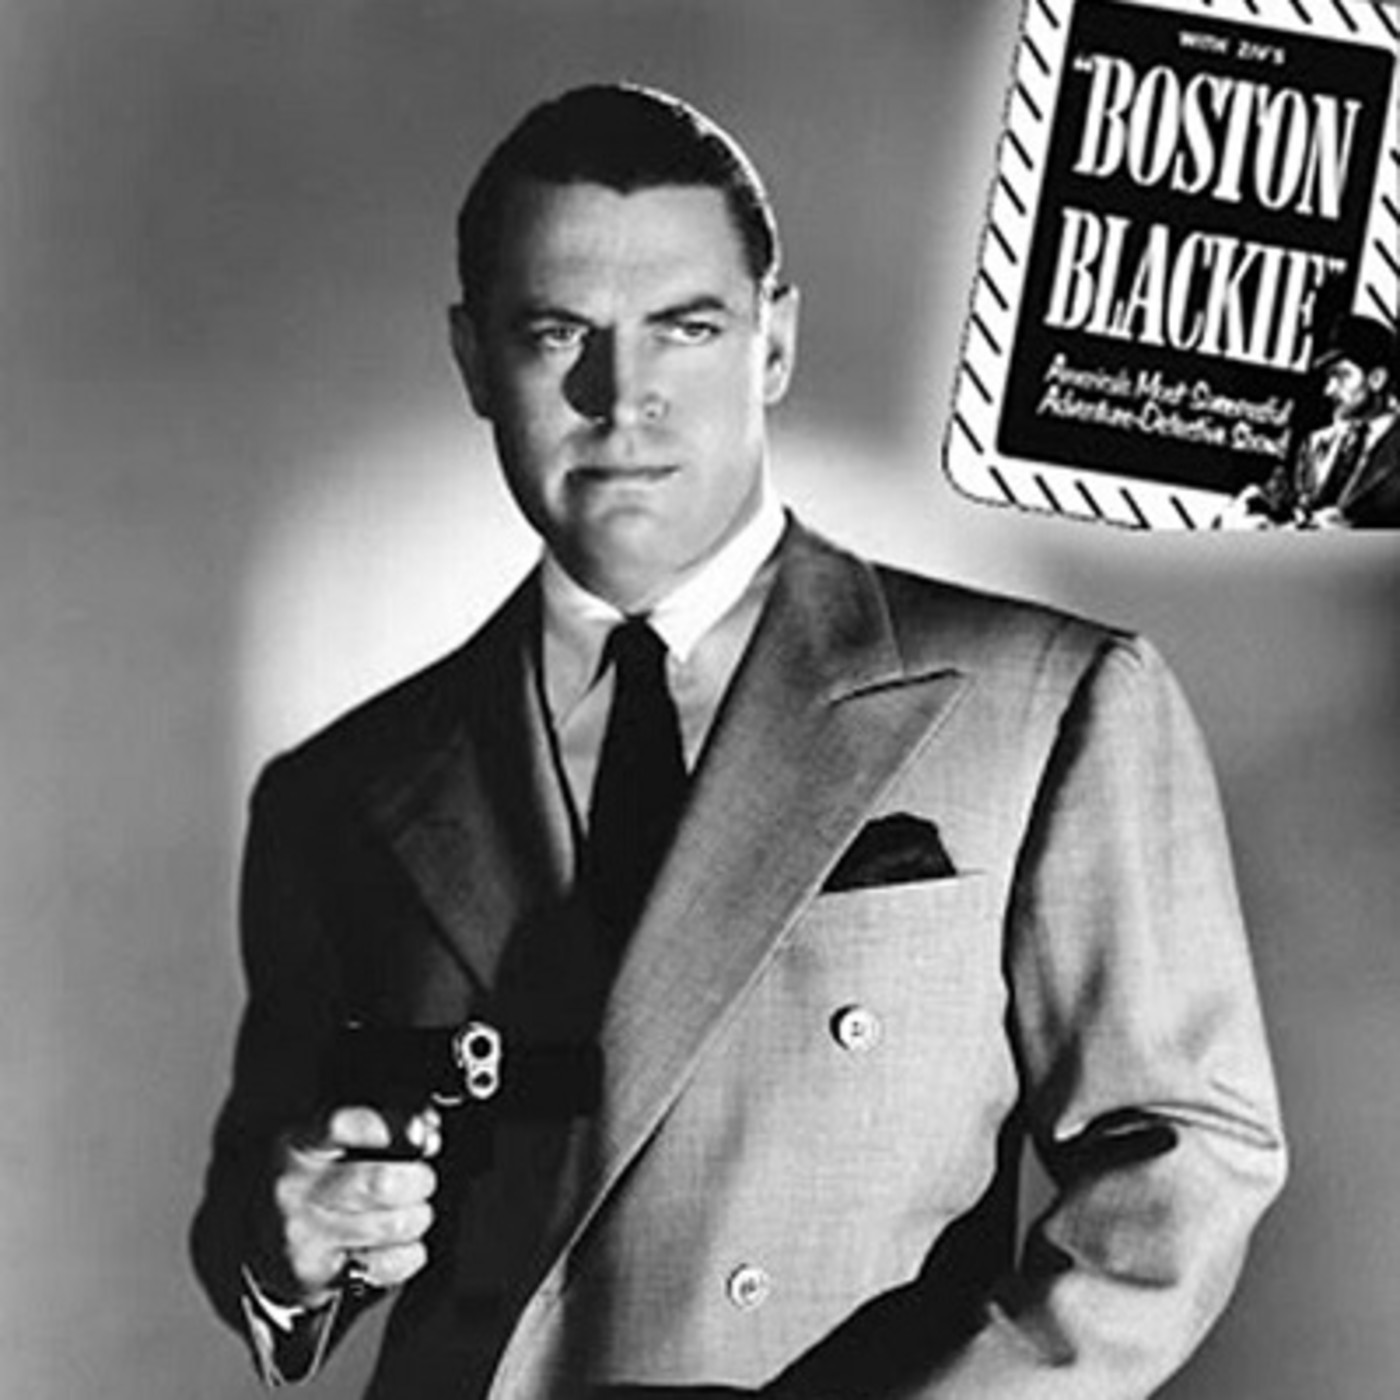 Boston Blackie - Fake Accident Racket - 216